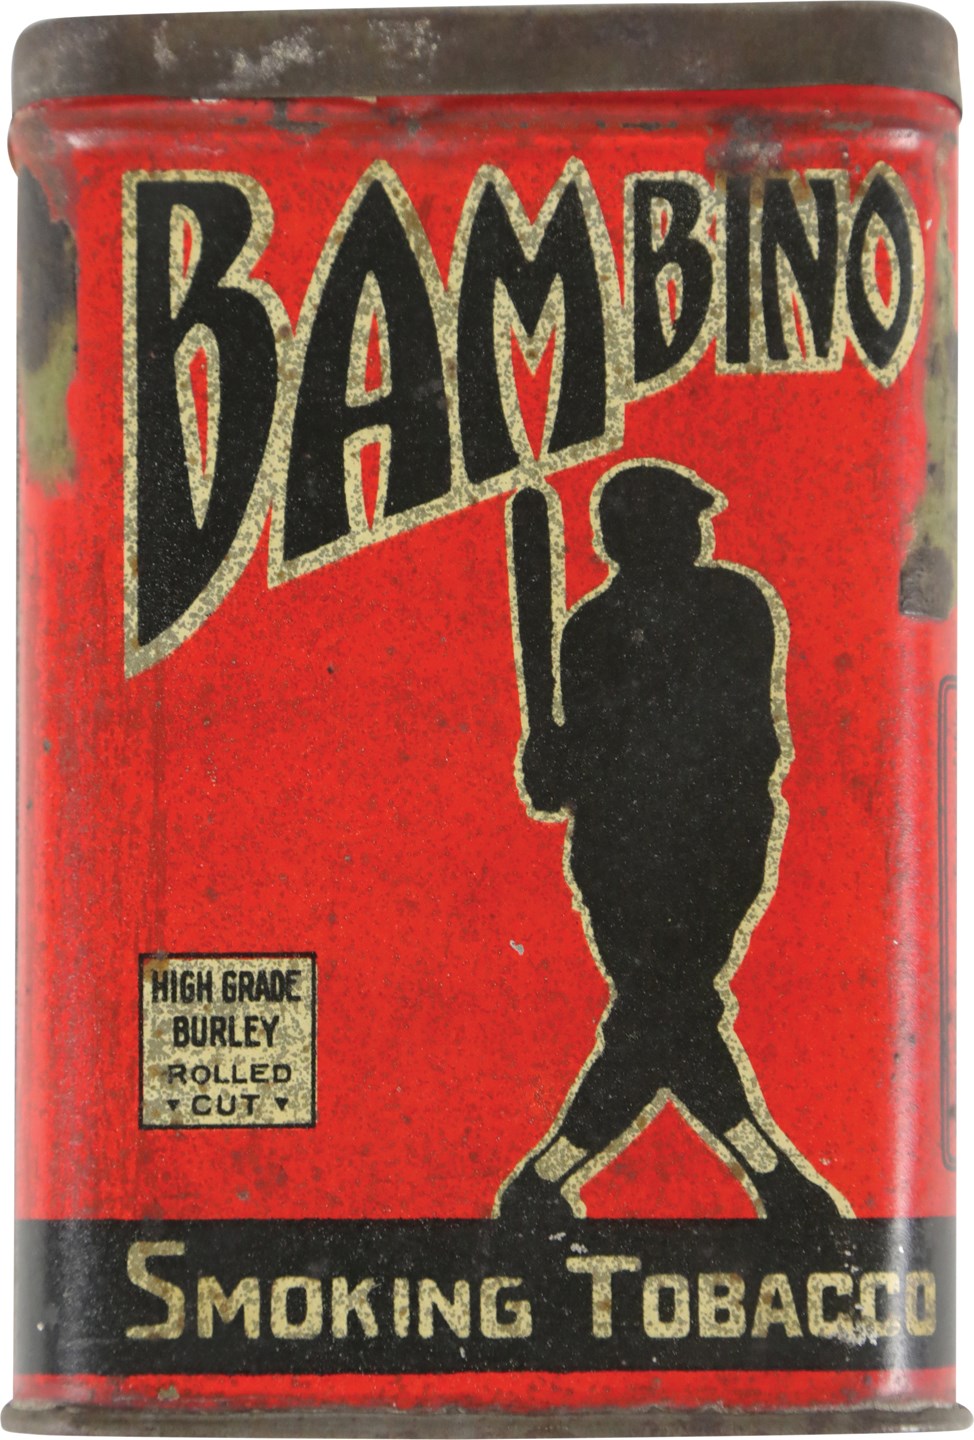 - Circa 1920s Babe Ruth "Bambino" Tobacco Tin